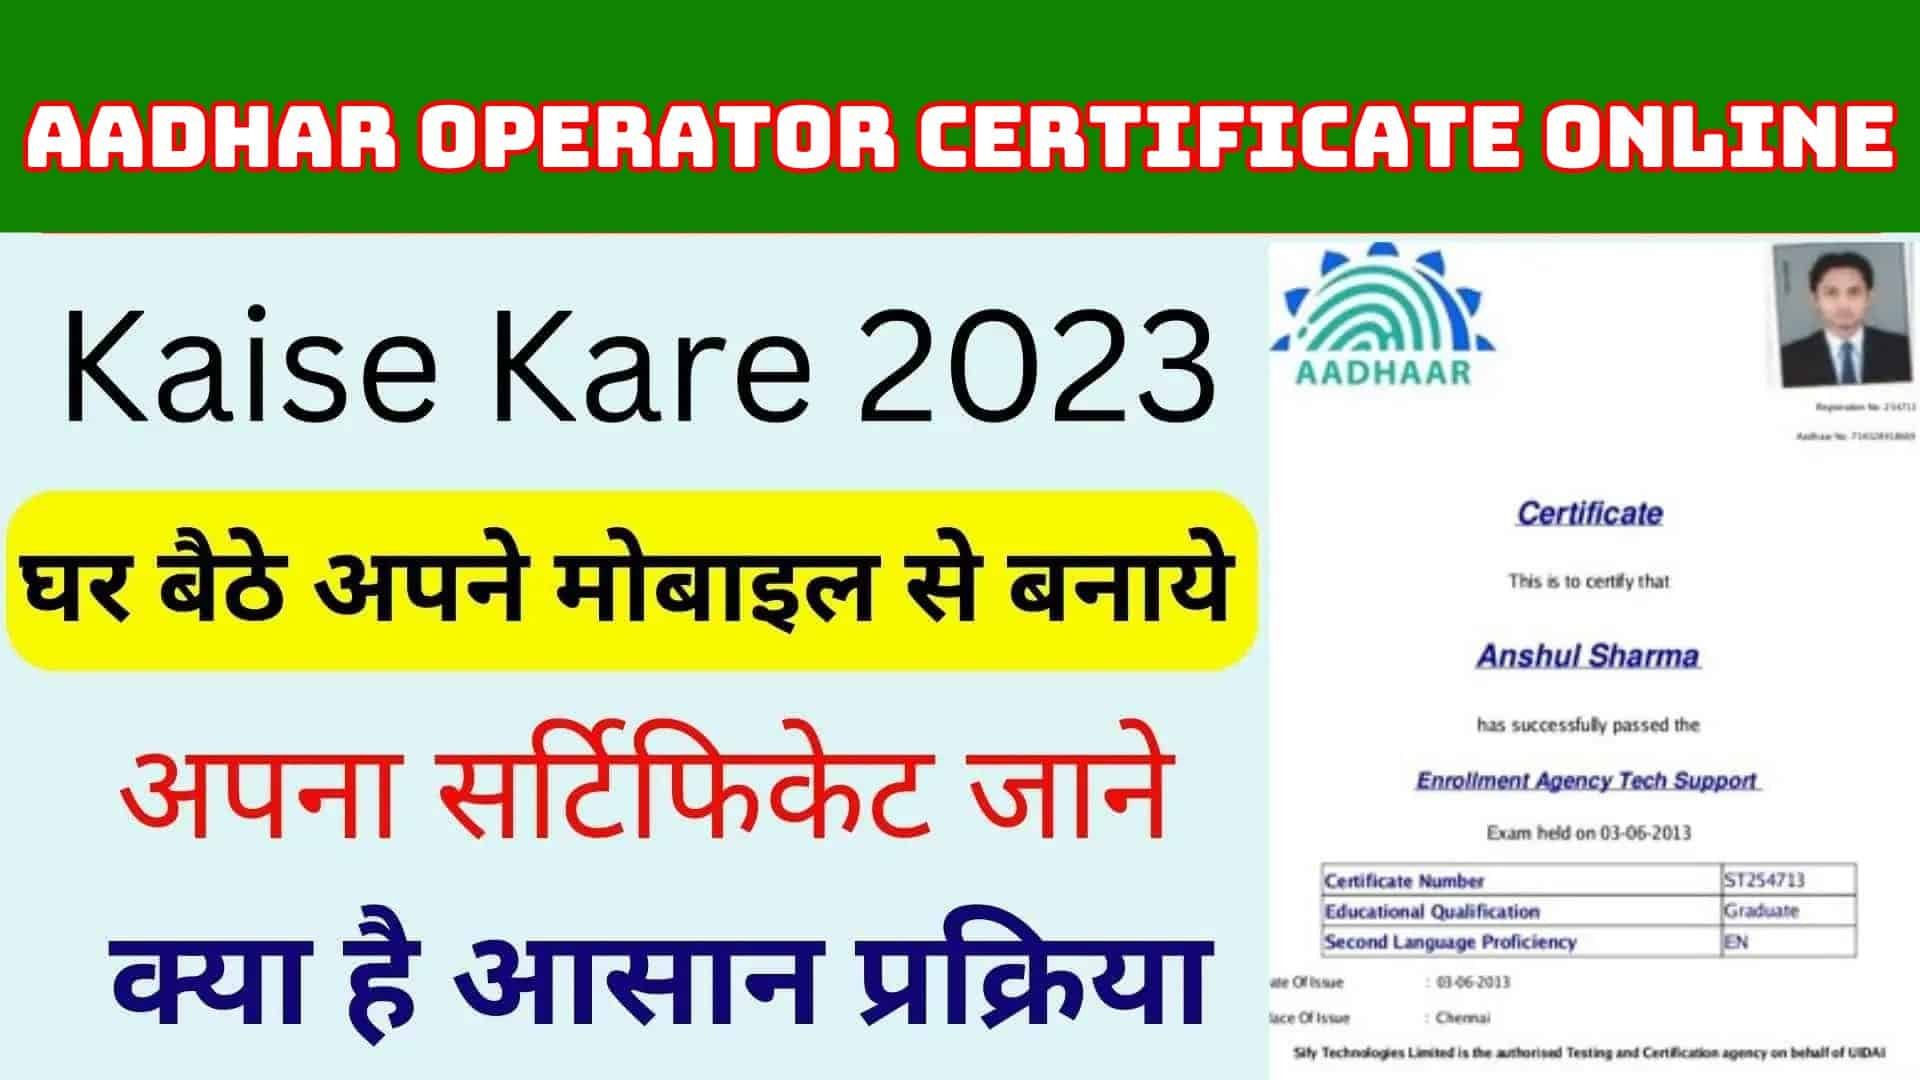 Aadhar Operator Certificate Online 2023 : घर बैठे करें आधार सर्टिफिकेट ऑपरेट जाने सर्टिफिकेट डाउनलोड करने की जानकारी